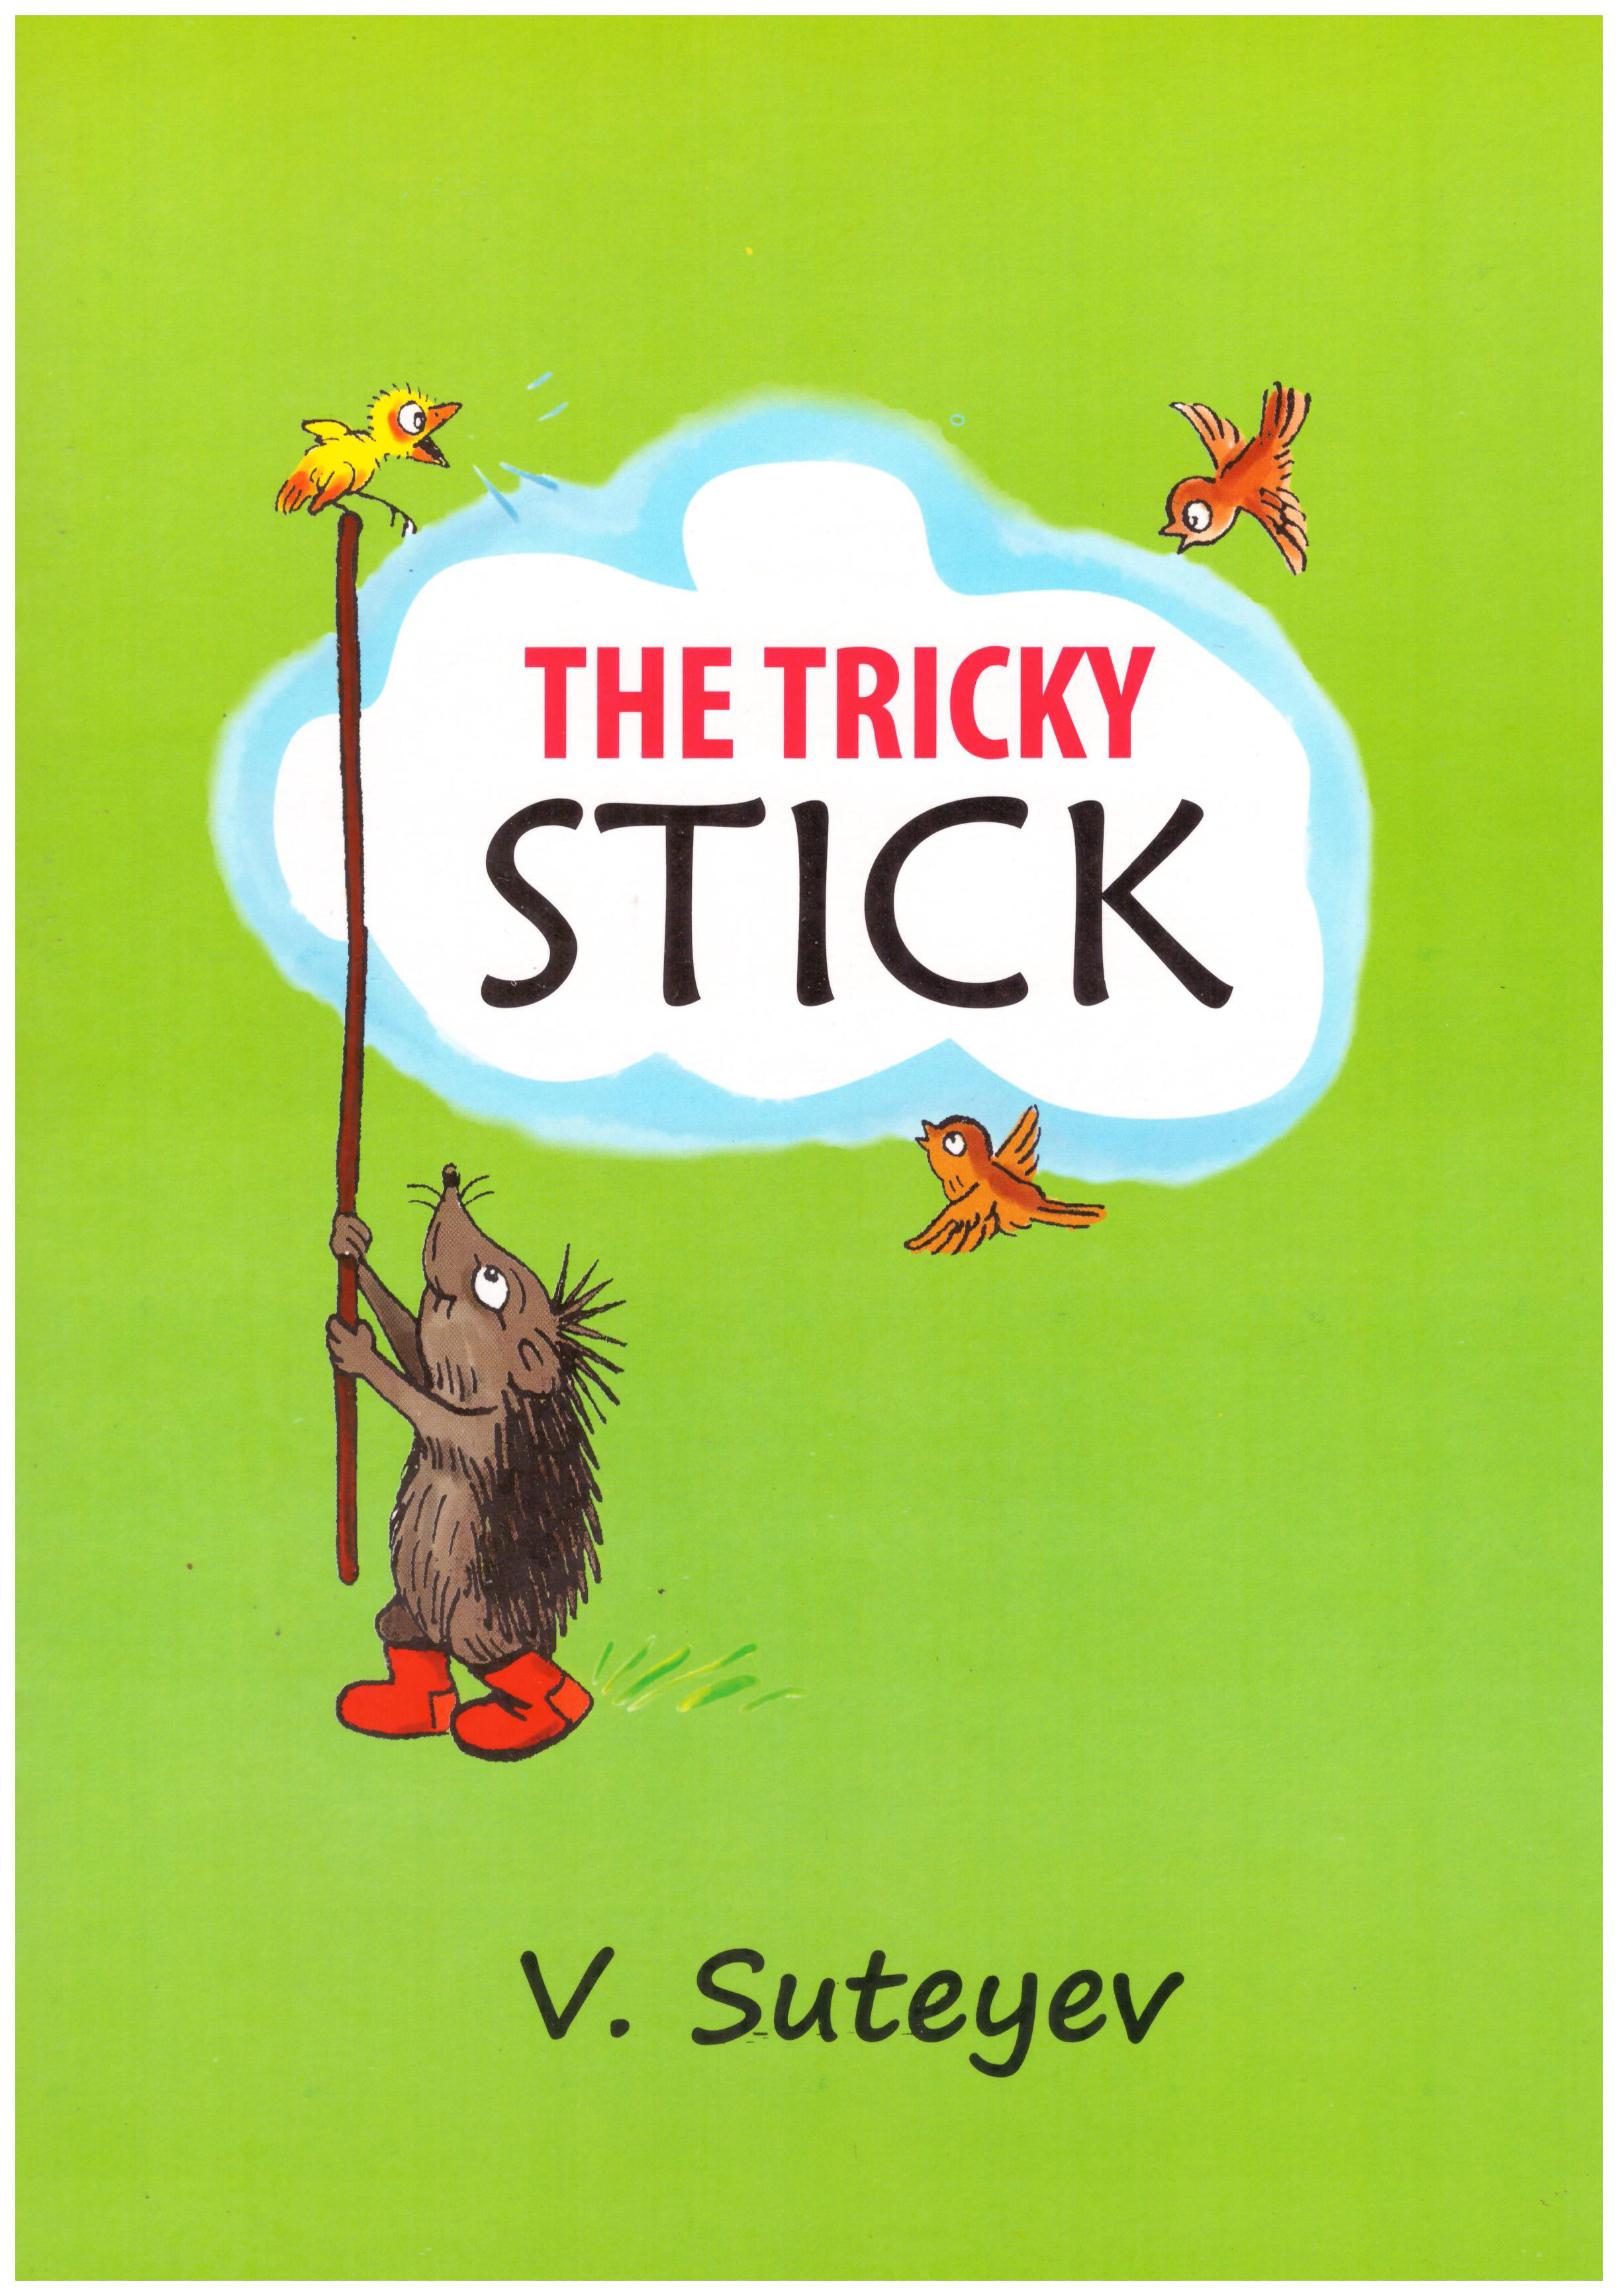 The Tricky Stick